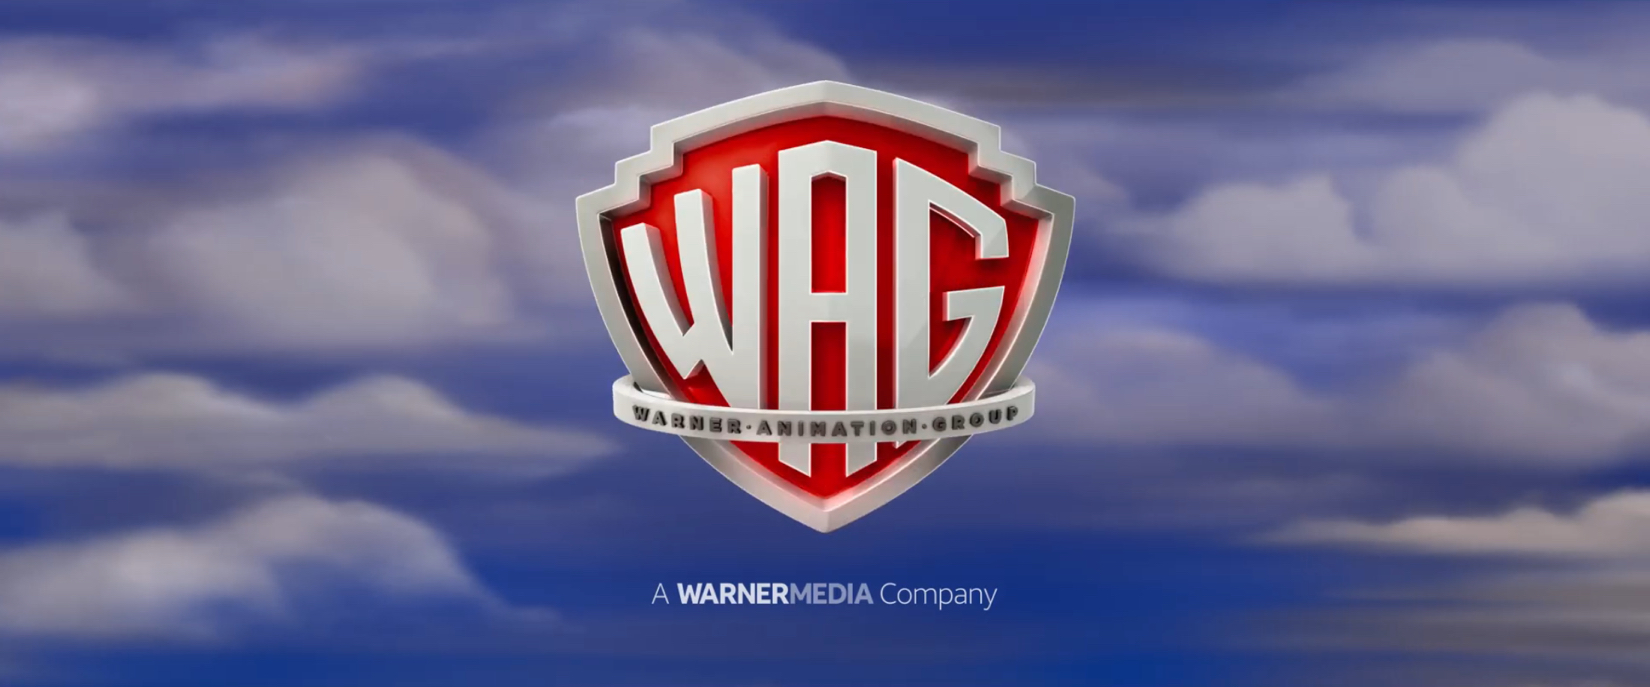 List of Warner Animation Group films The idea Wiki Fandom